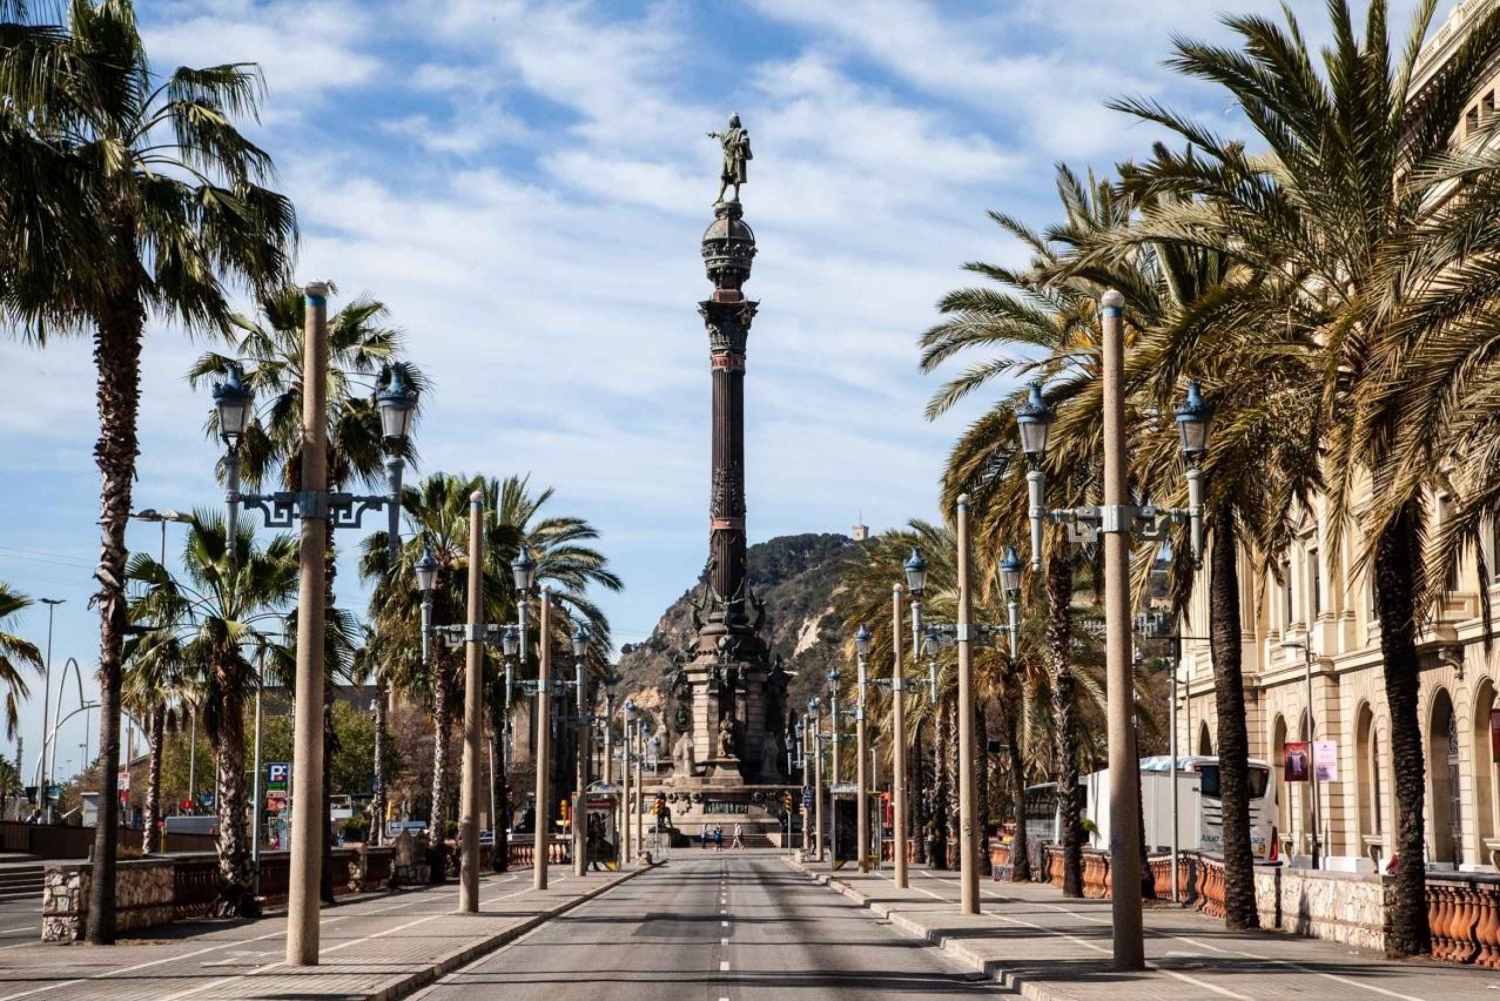 Havne- og sjøvandring i Barcelona med Columbus-monumentet